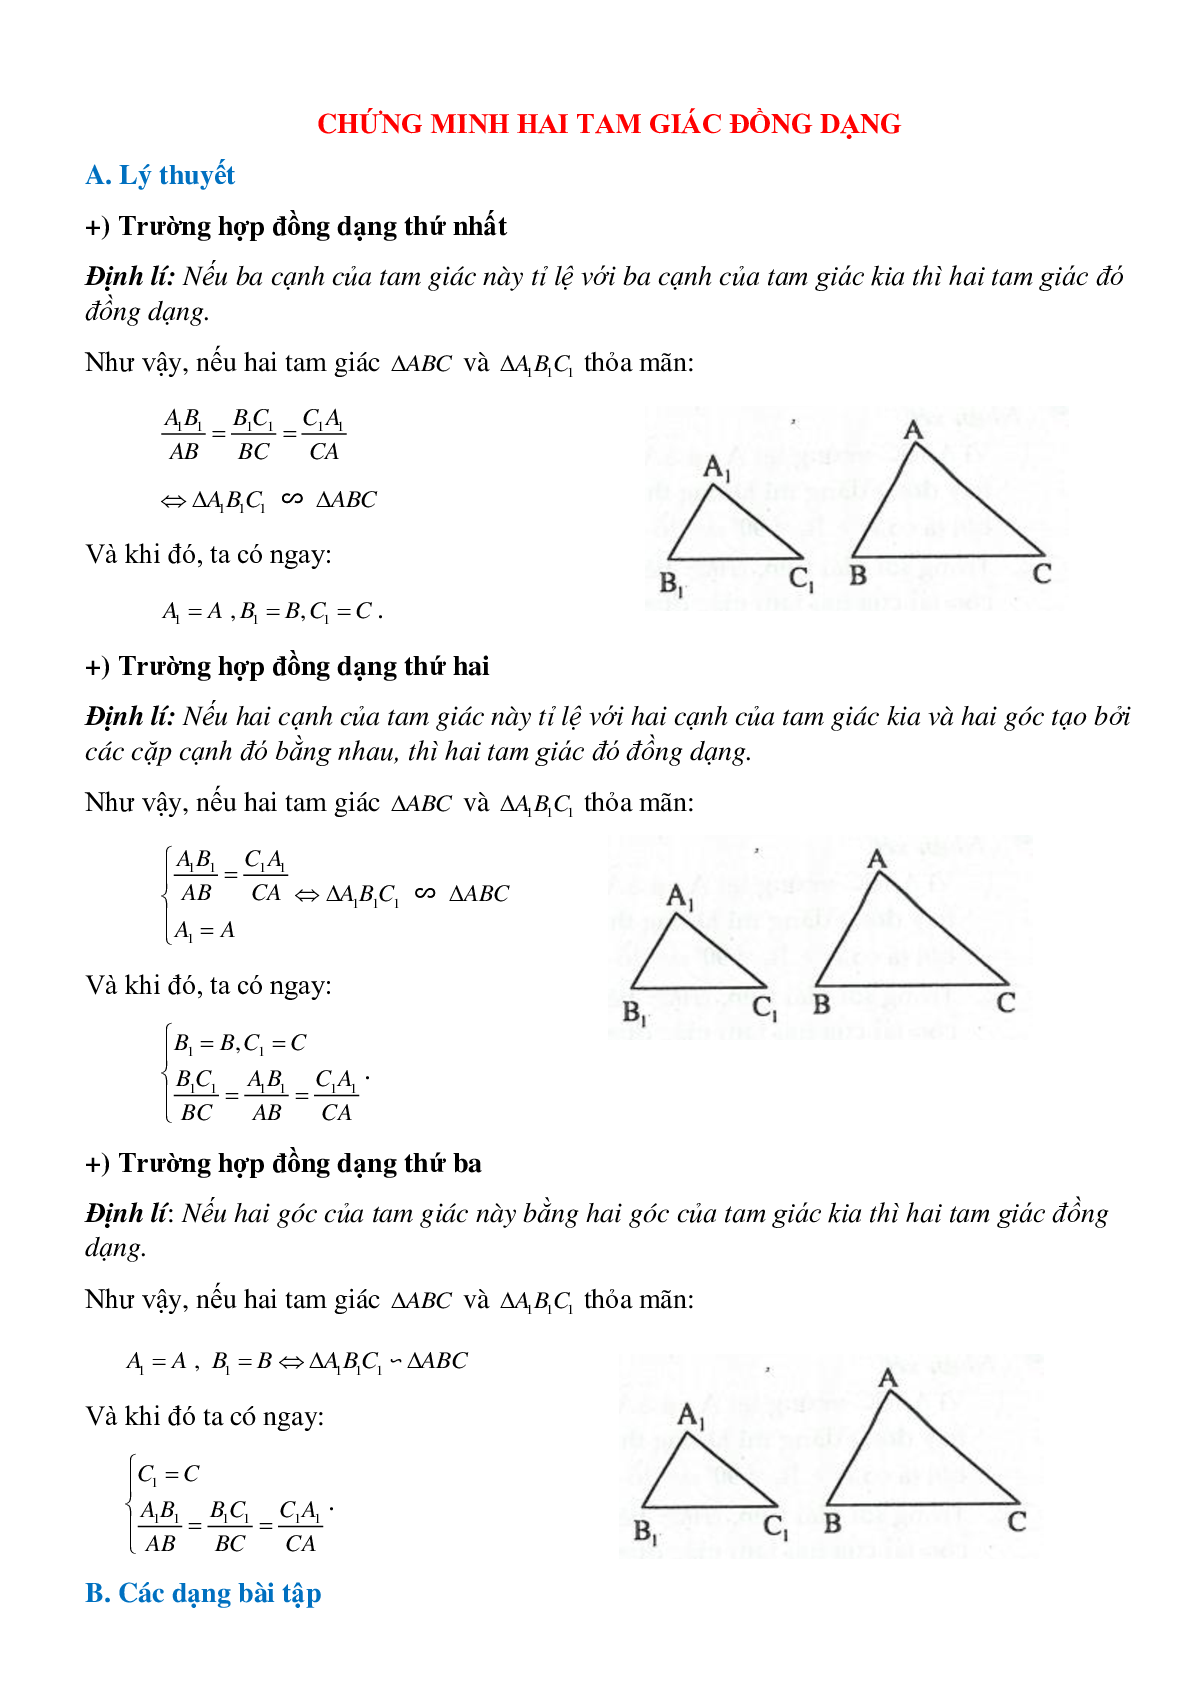 Phương pháp giải cụ thể, bài bác tập dượt về Chứng minh nhị tam giác đồng dạng tinh lọc (trang 1)